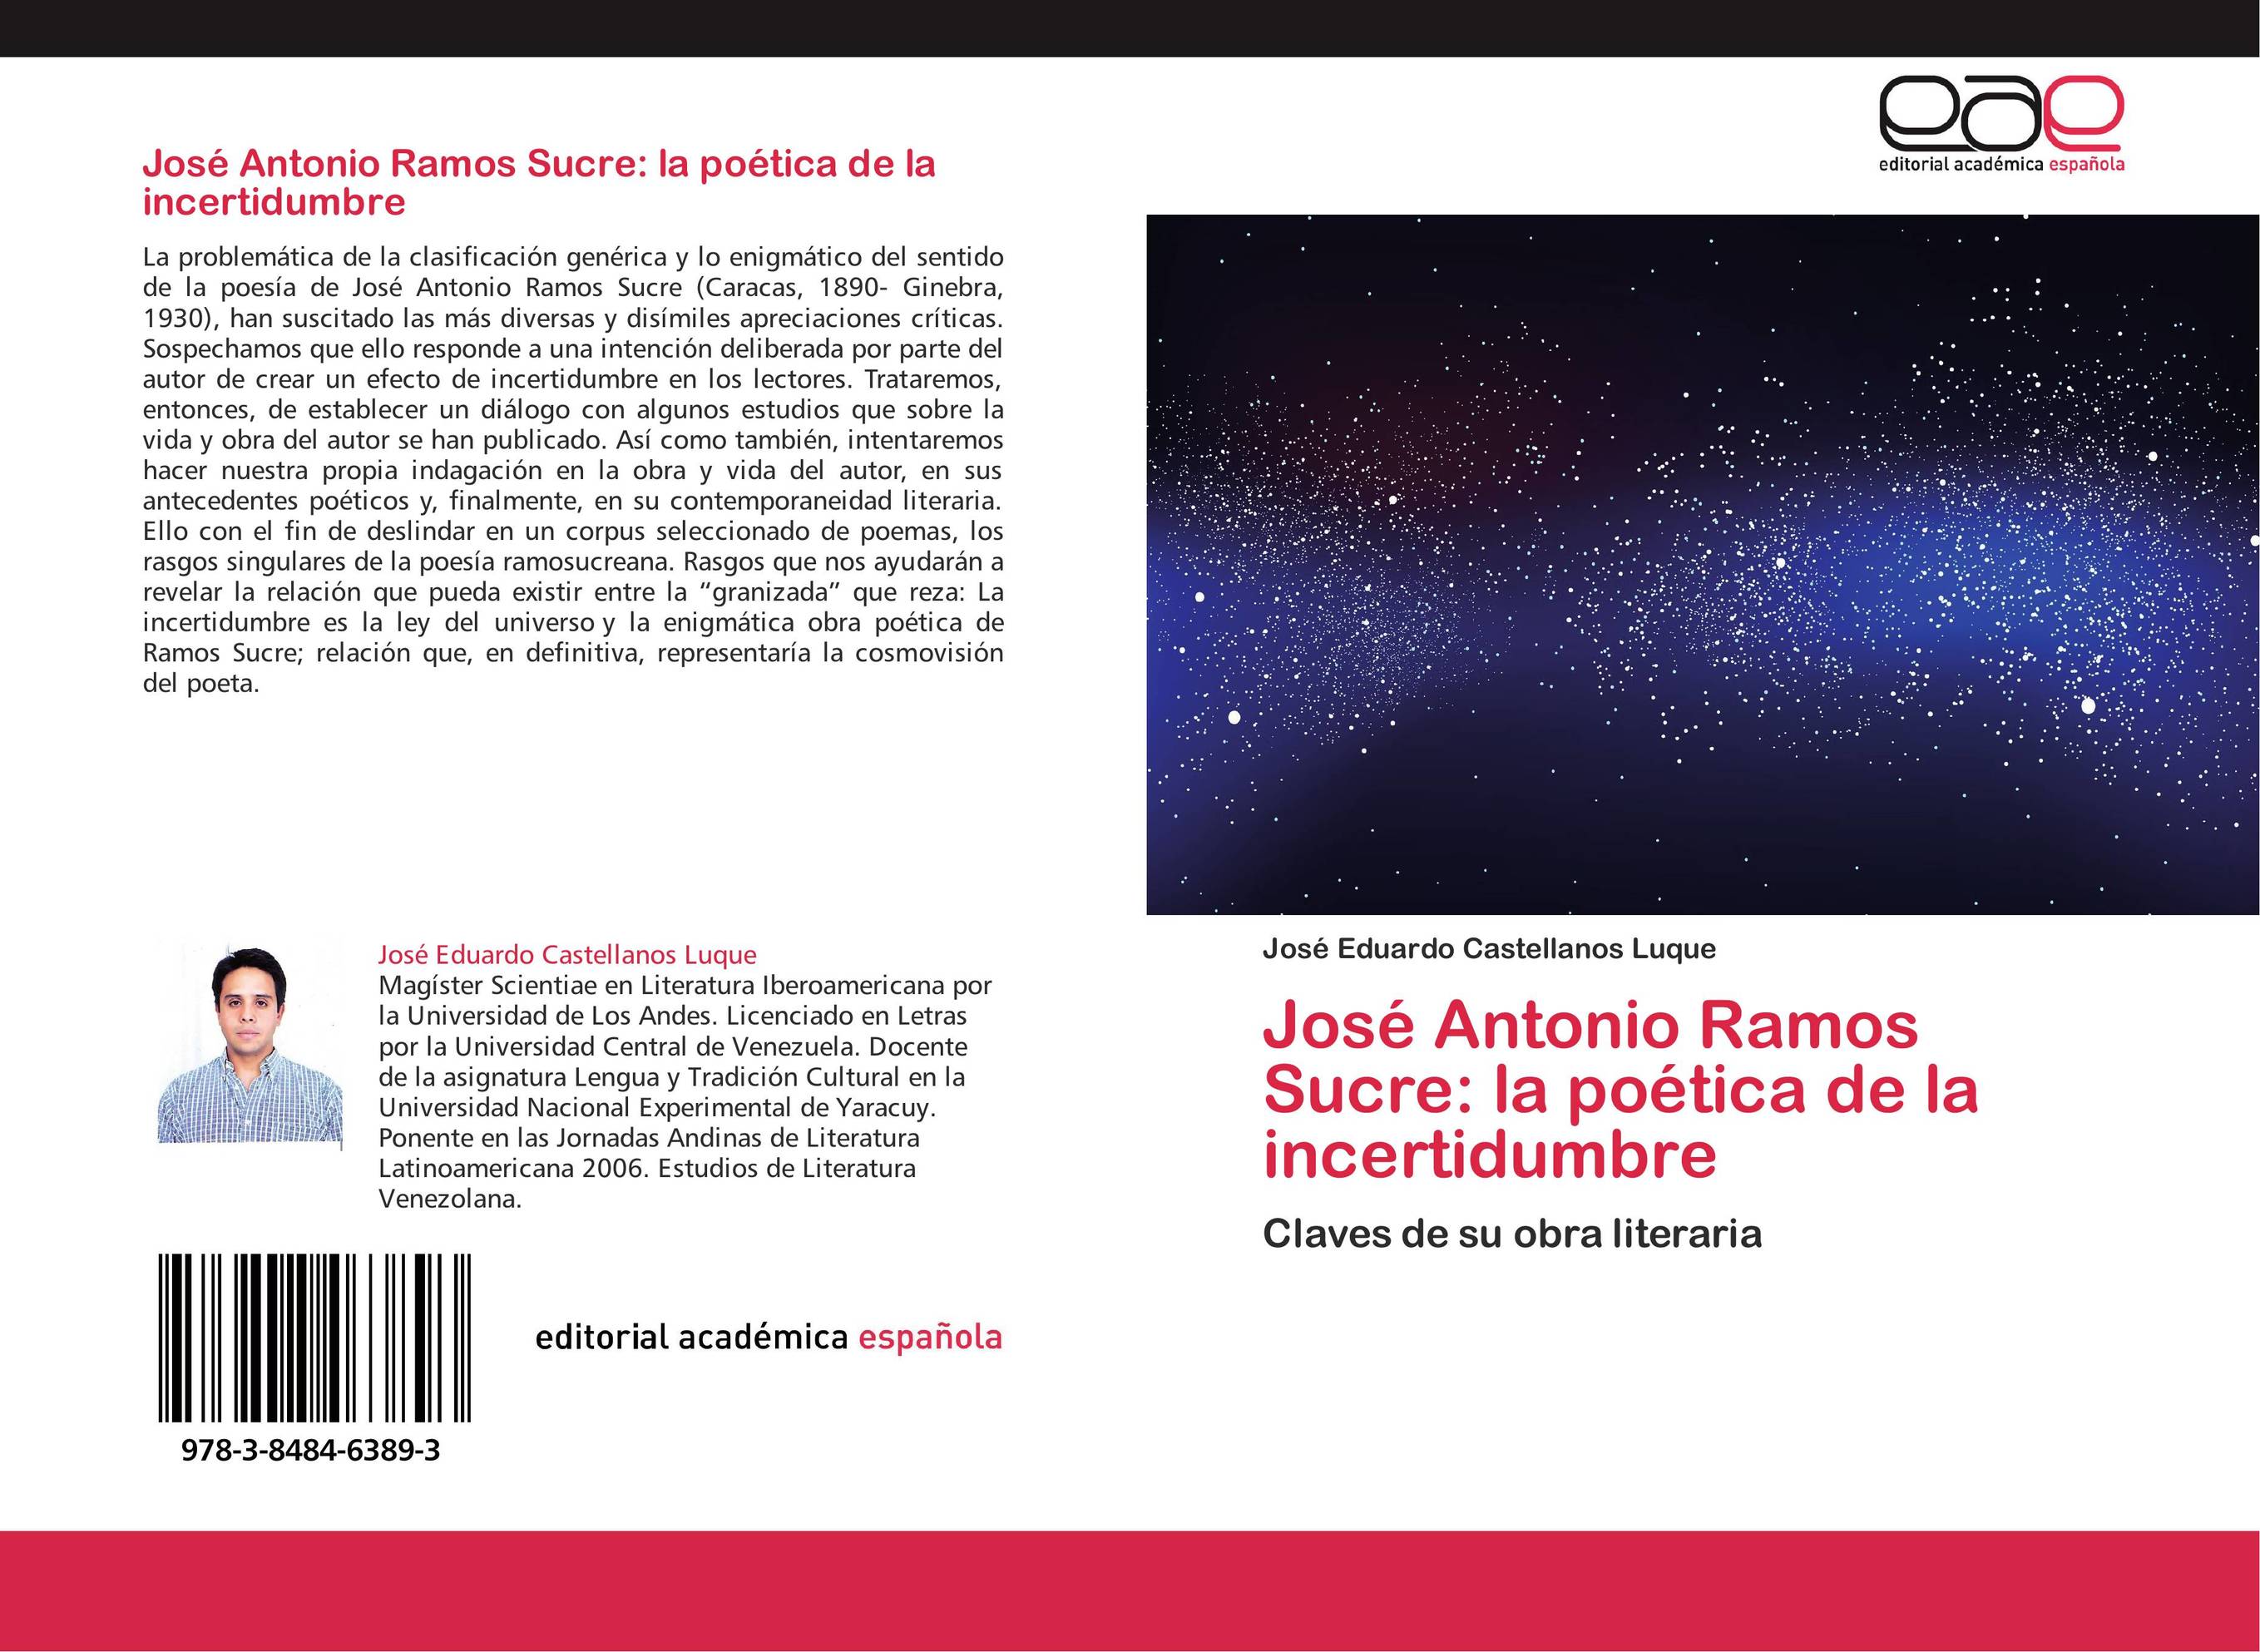 José Antonio Ramos Sucre: la poética de la incertidumbre